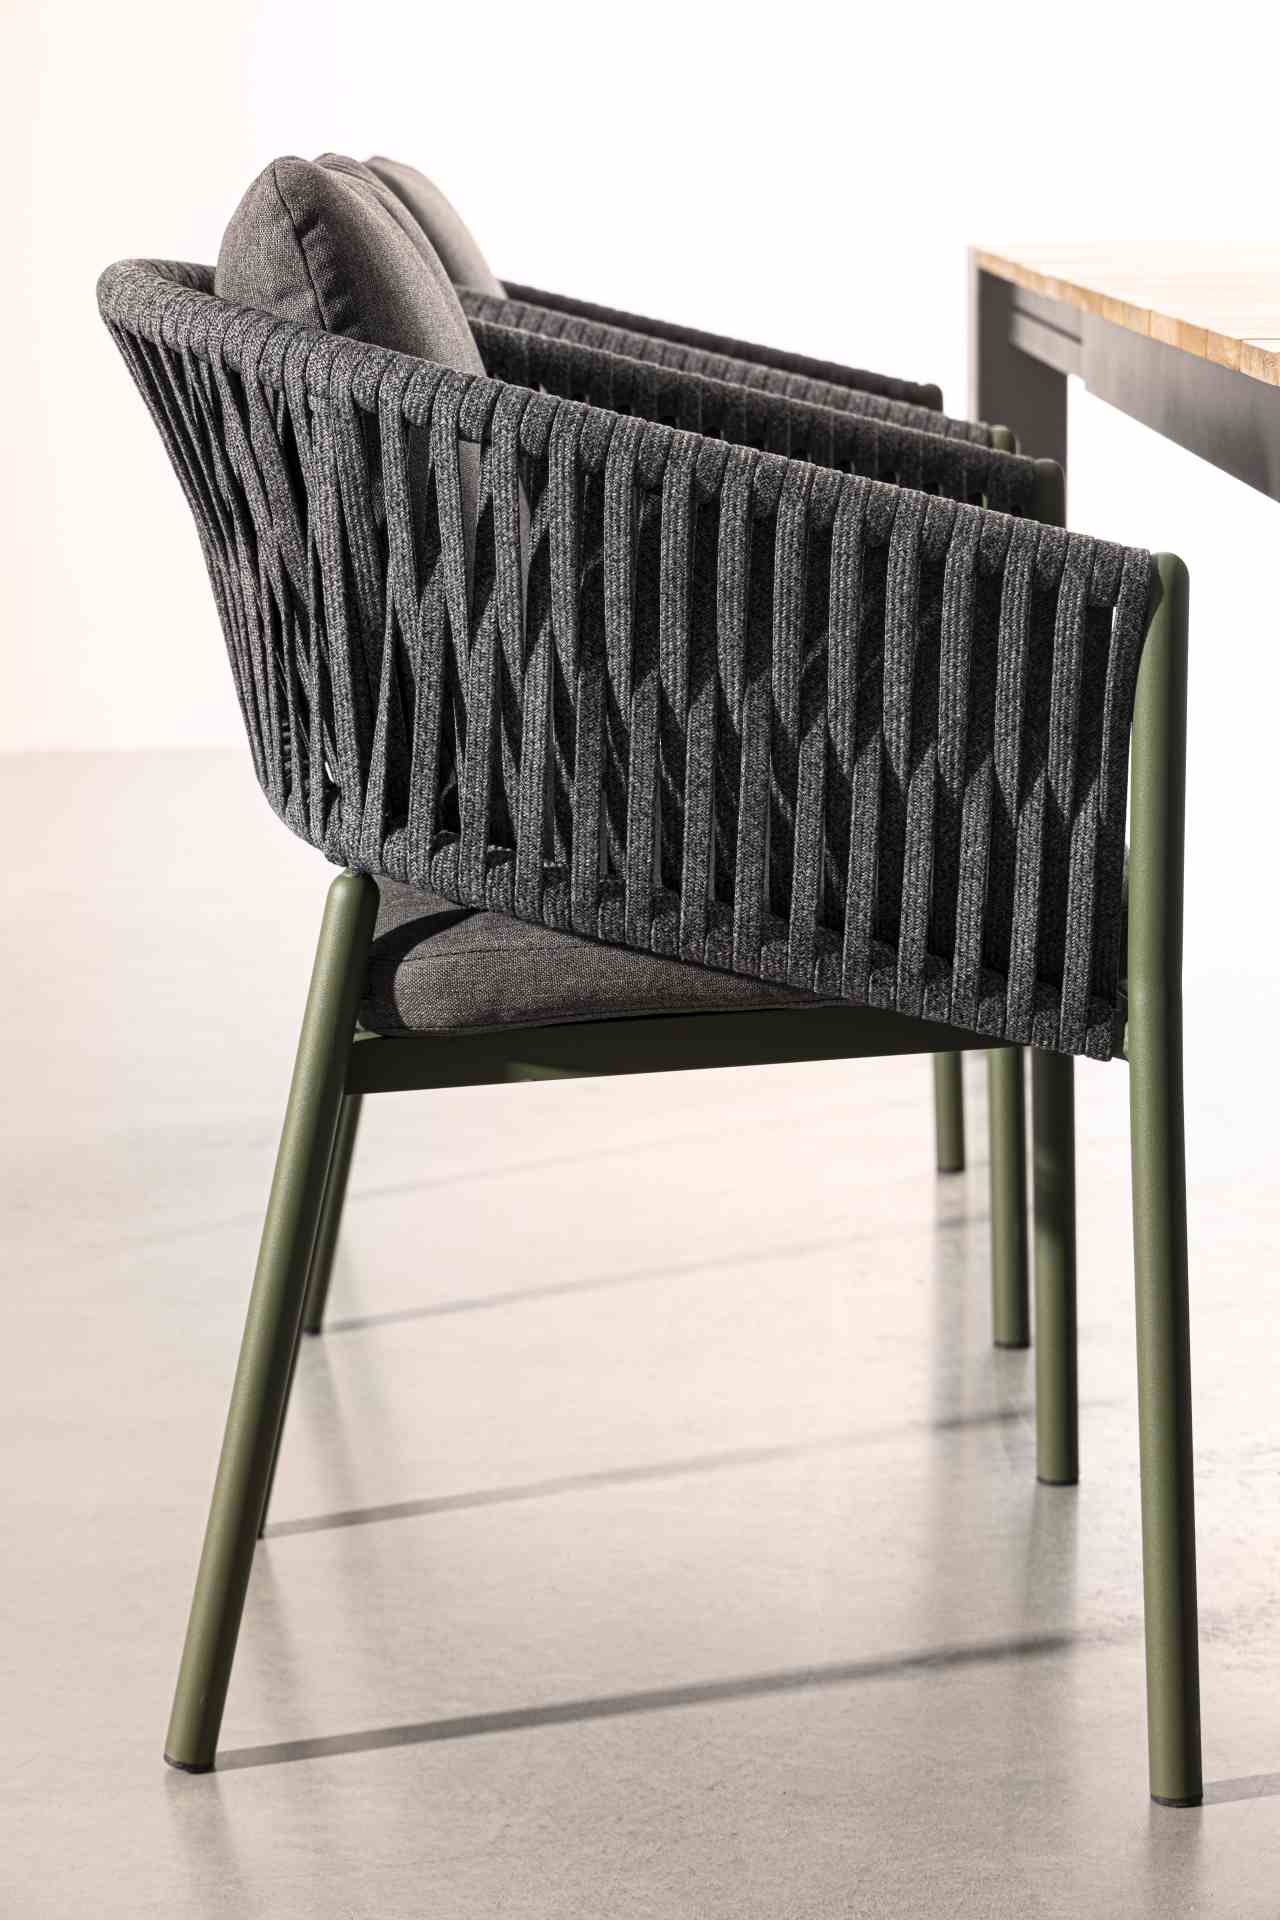 Der Gartenstuhl Florencia überzeugt mit seinem modernen Design. Gefertigt wurde er aus Olefin-Stoff, welcher einen Anthrazit Farbton besitzt. Das Gestell ist aus Aluminium und hat eine grüne Farbe. Der Stuhl verfügt über eine Sitzhöhe von 49 cm und ist fü